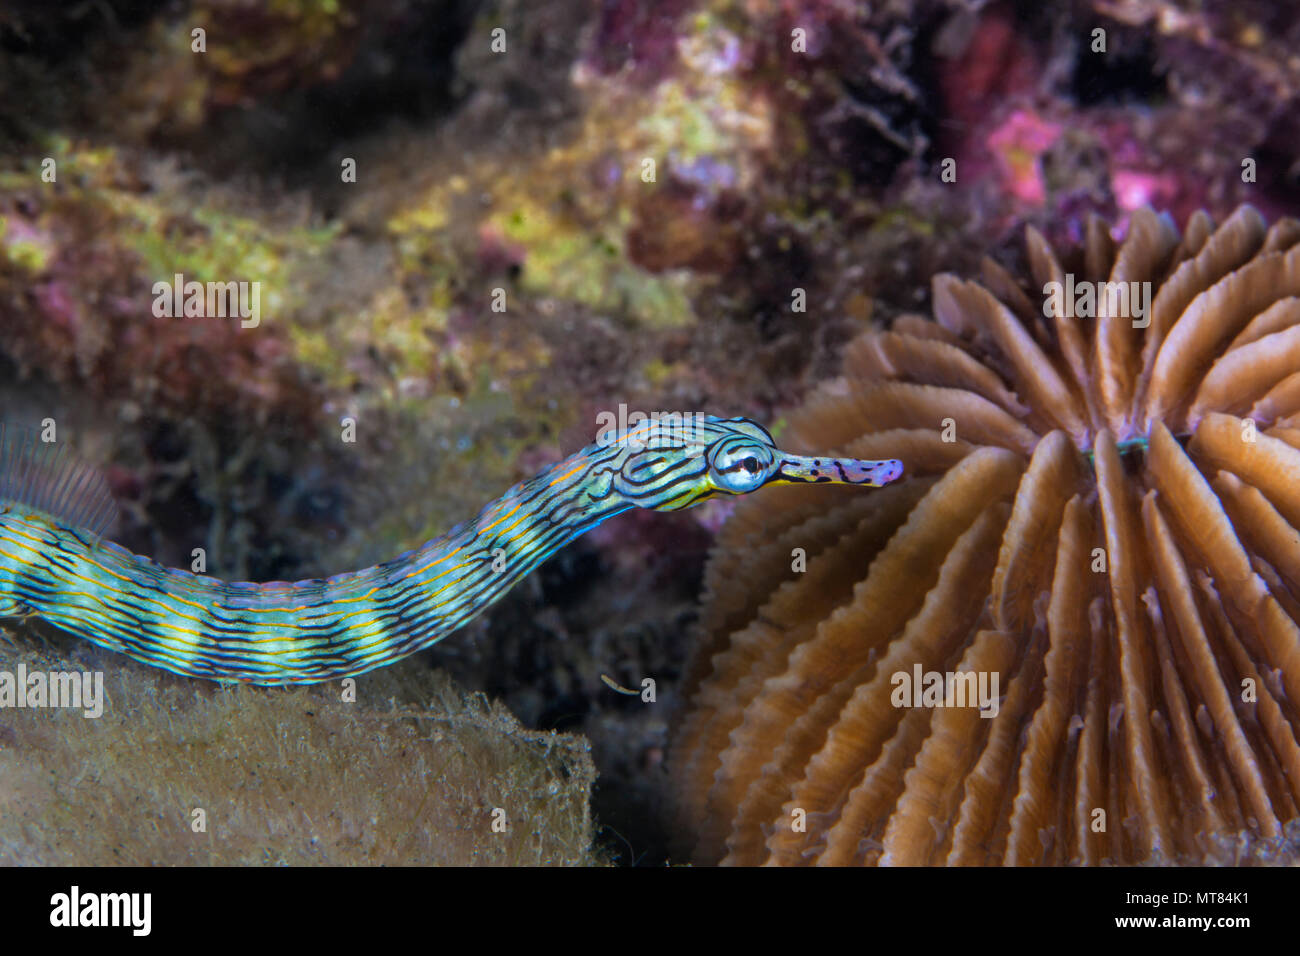 Agujas de mar Messmate anillados (Corythoichthys sp.) repta por el suelo marino de arrecifes de coral. Estrecho de Lembeh, Indonesia. Foto de stock